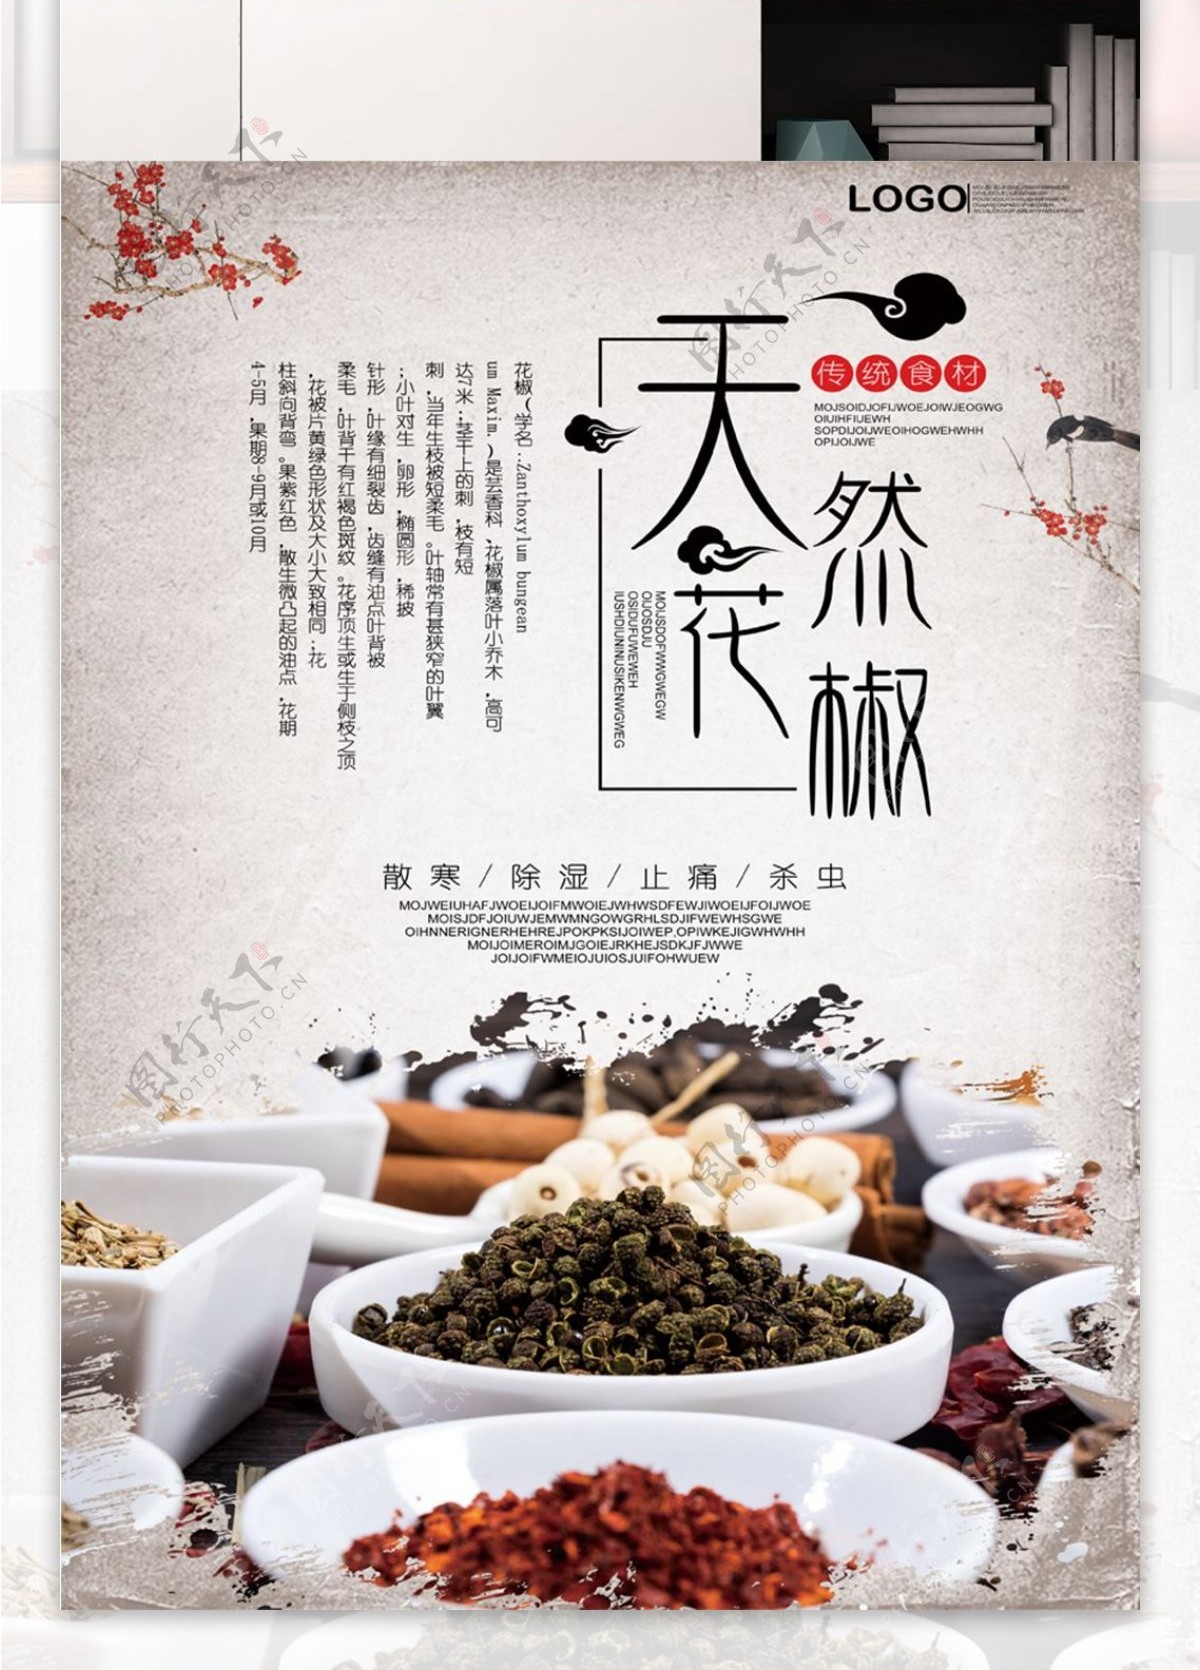 中国风花椒海报背景素材